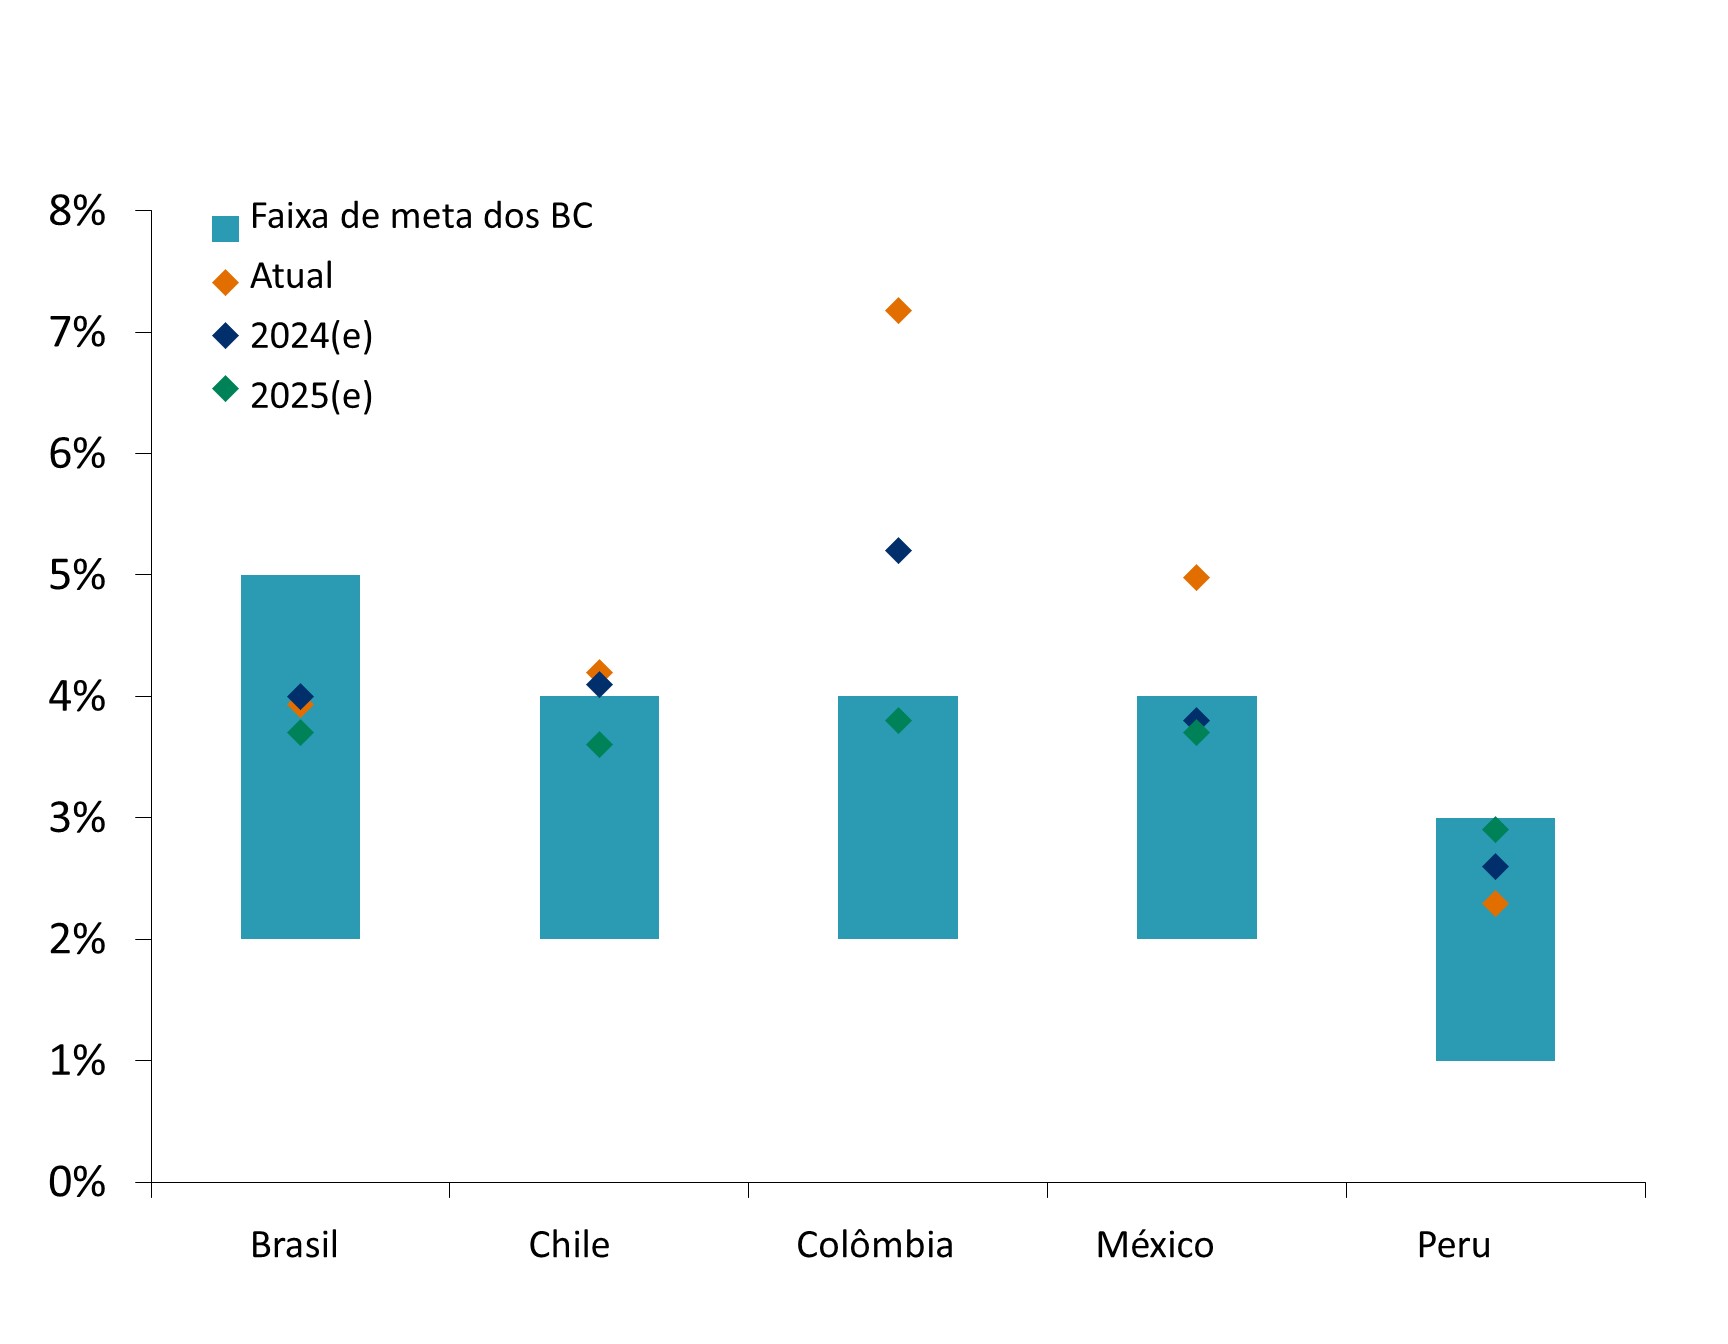 Este gráfico mostra a inflação atual, a inflação esperada para 2024 e 2025, e as faixas de inflação dos bancos centrais para Brasil, Chile, Colômbia, México e Peru.